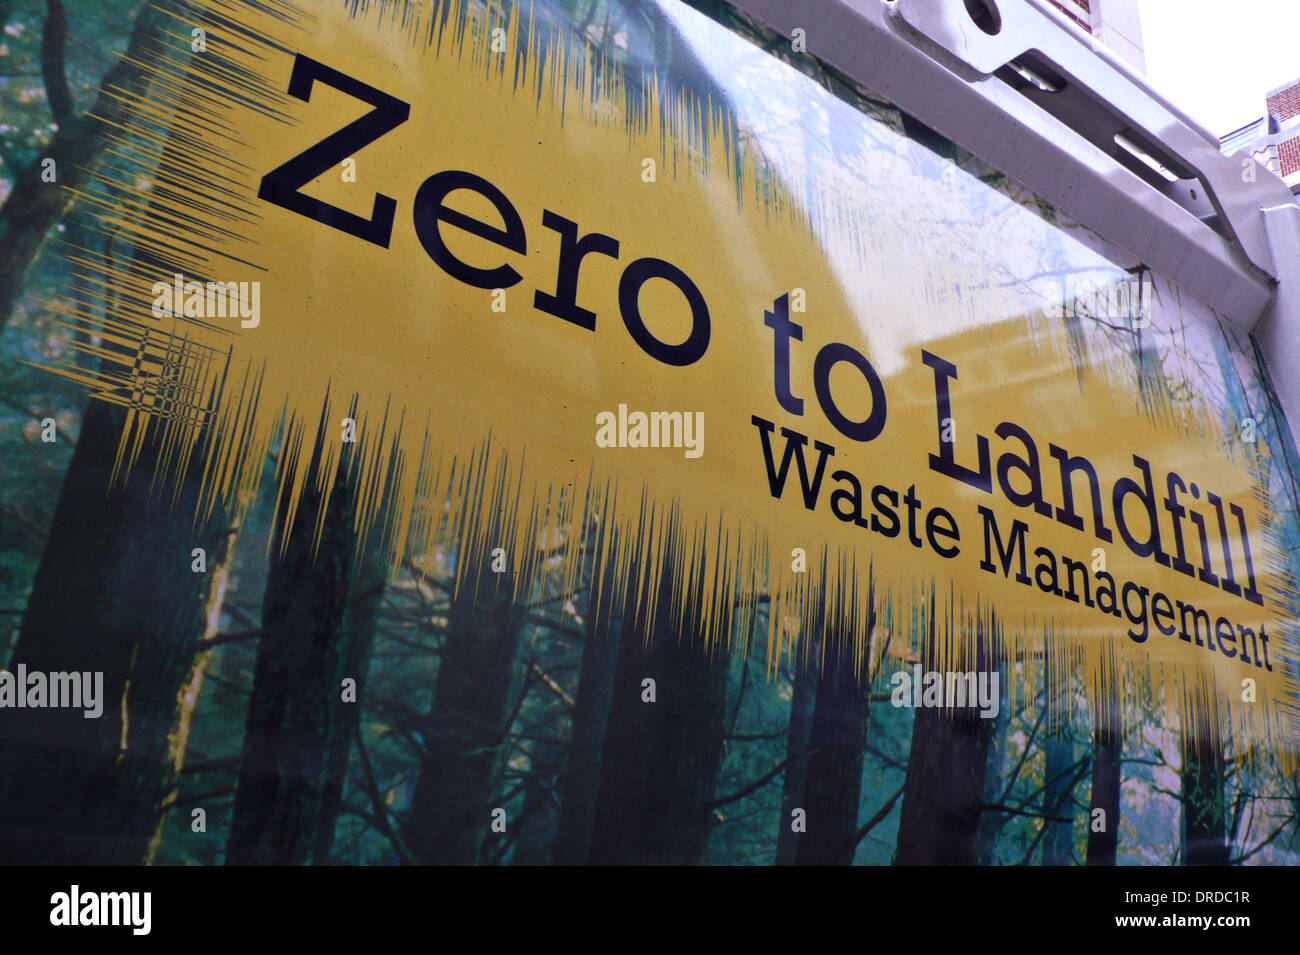 waste management Stock Photo